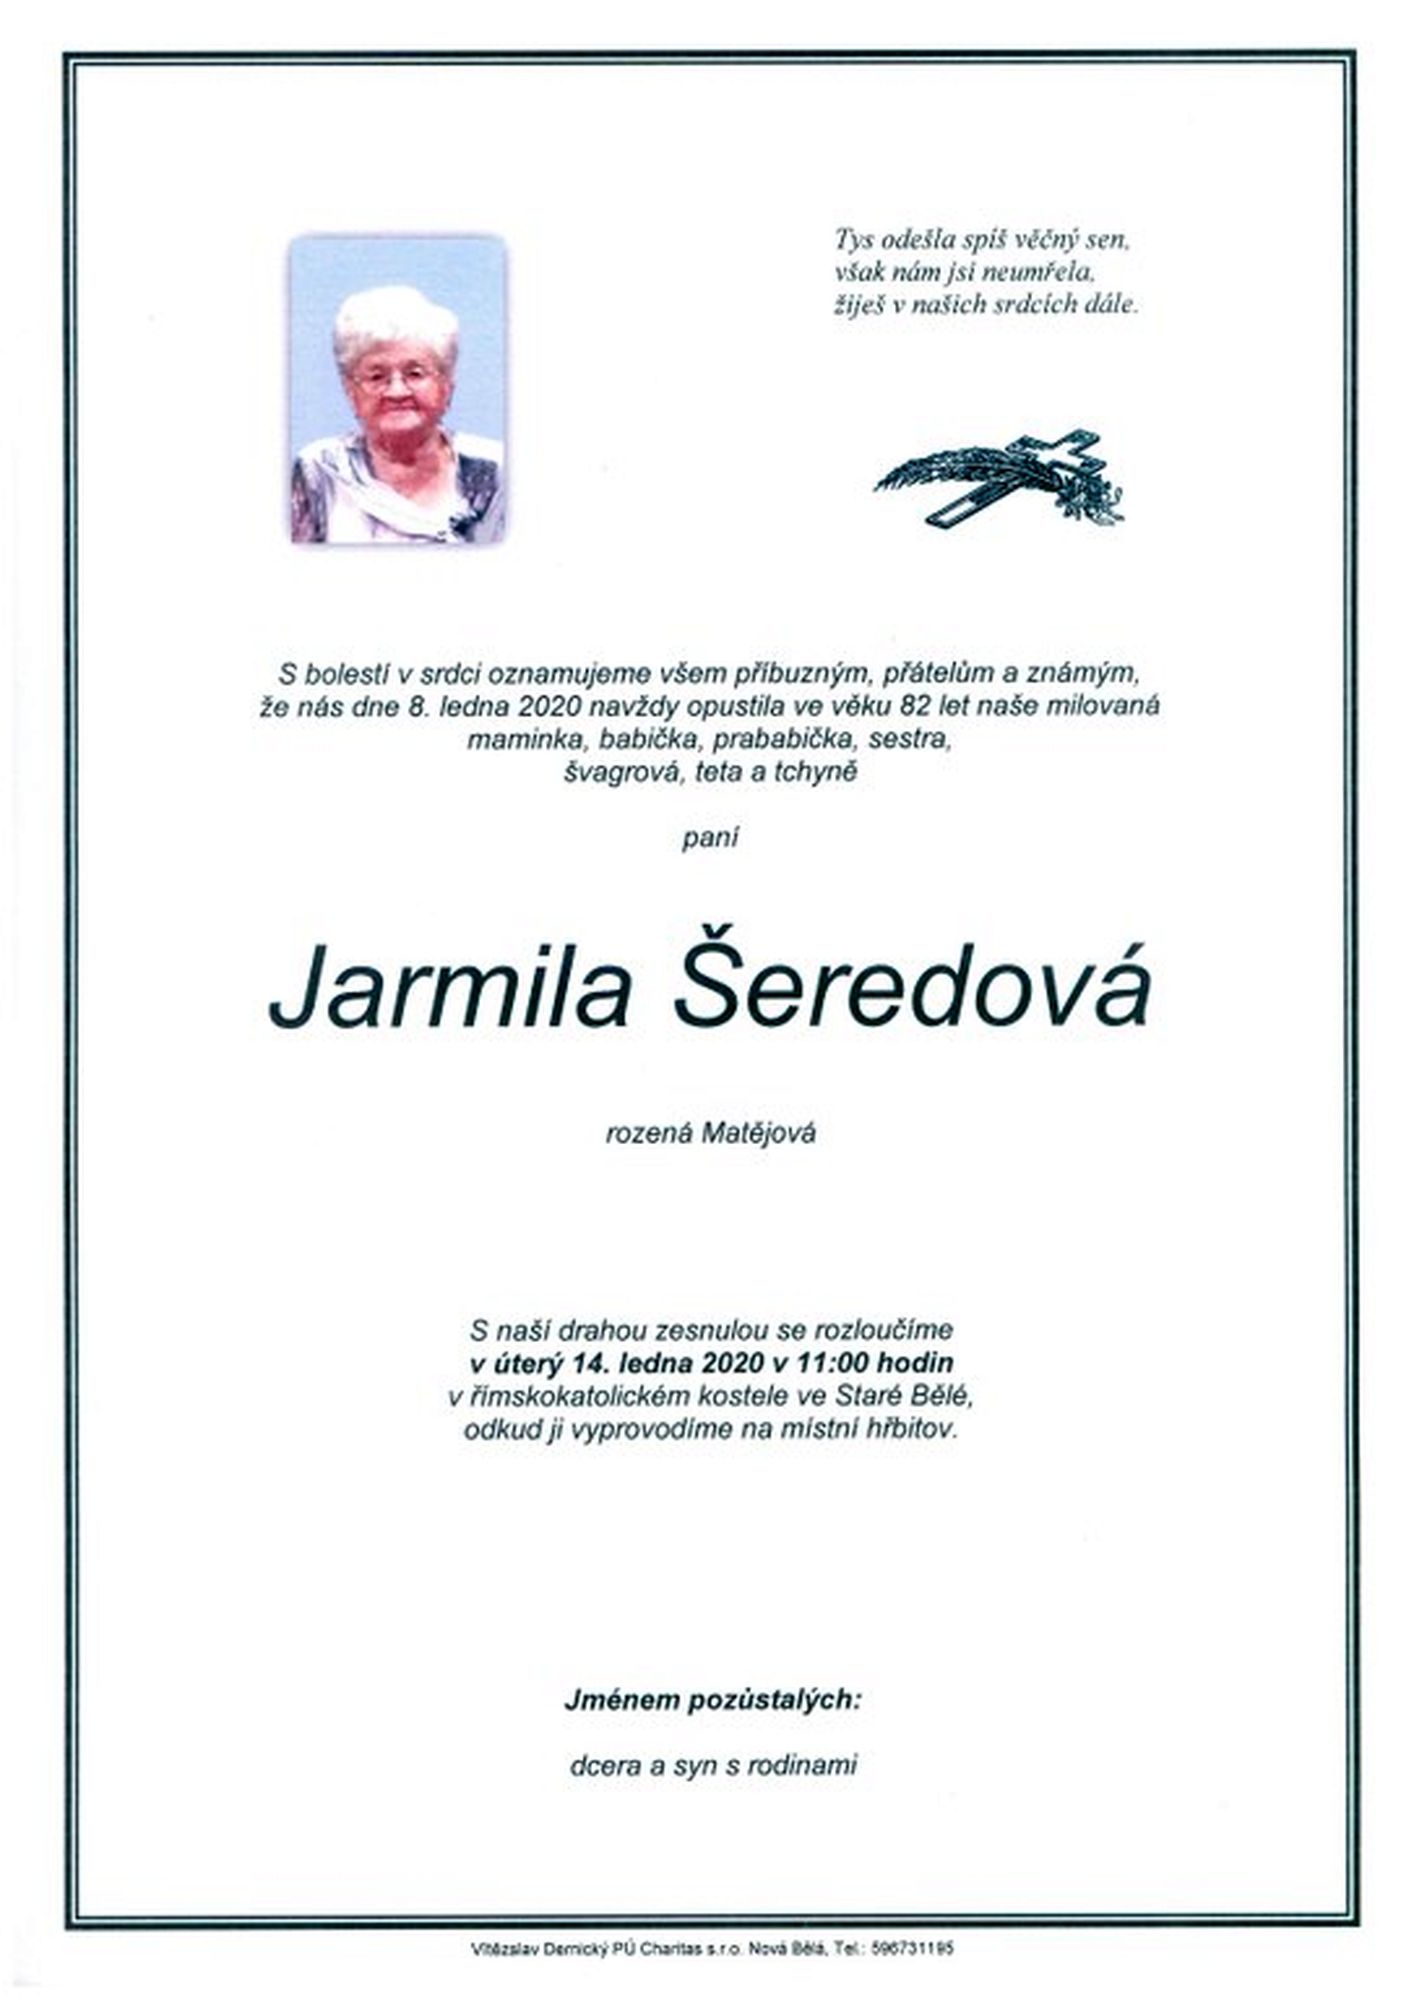 Jarmila Šeredová